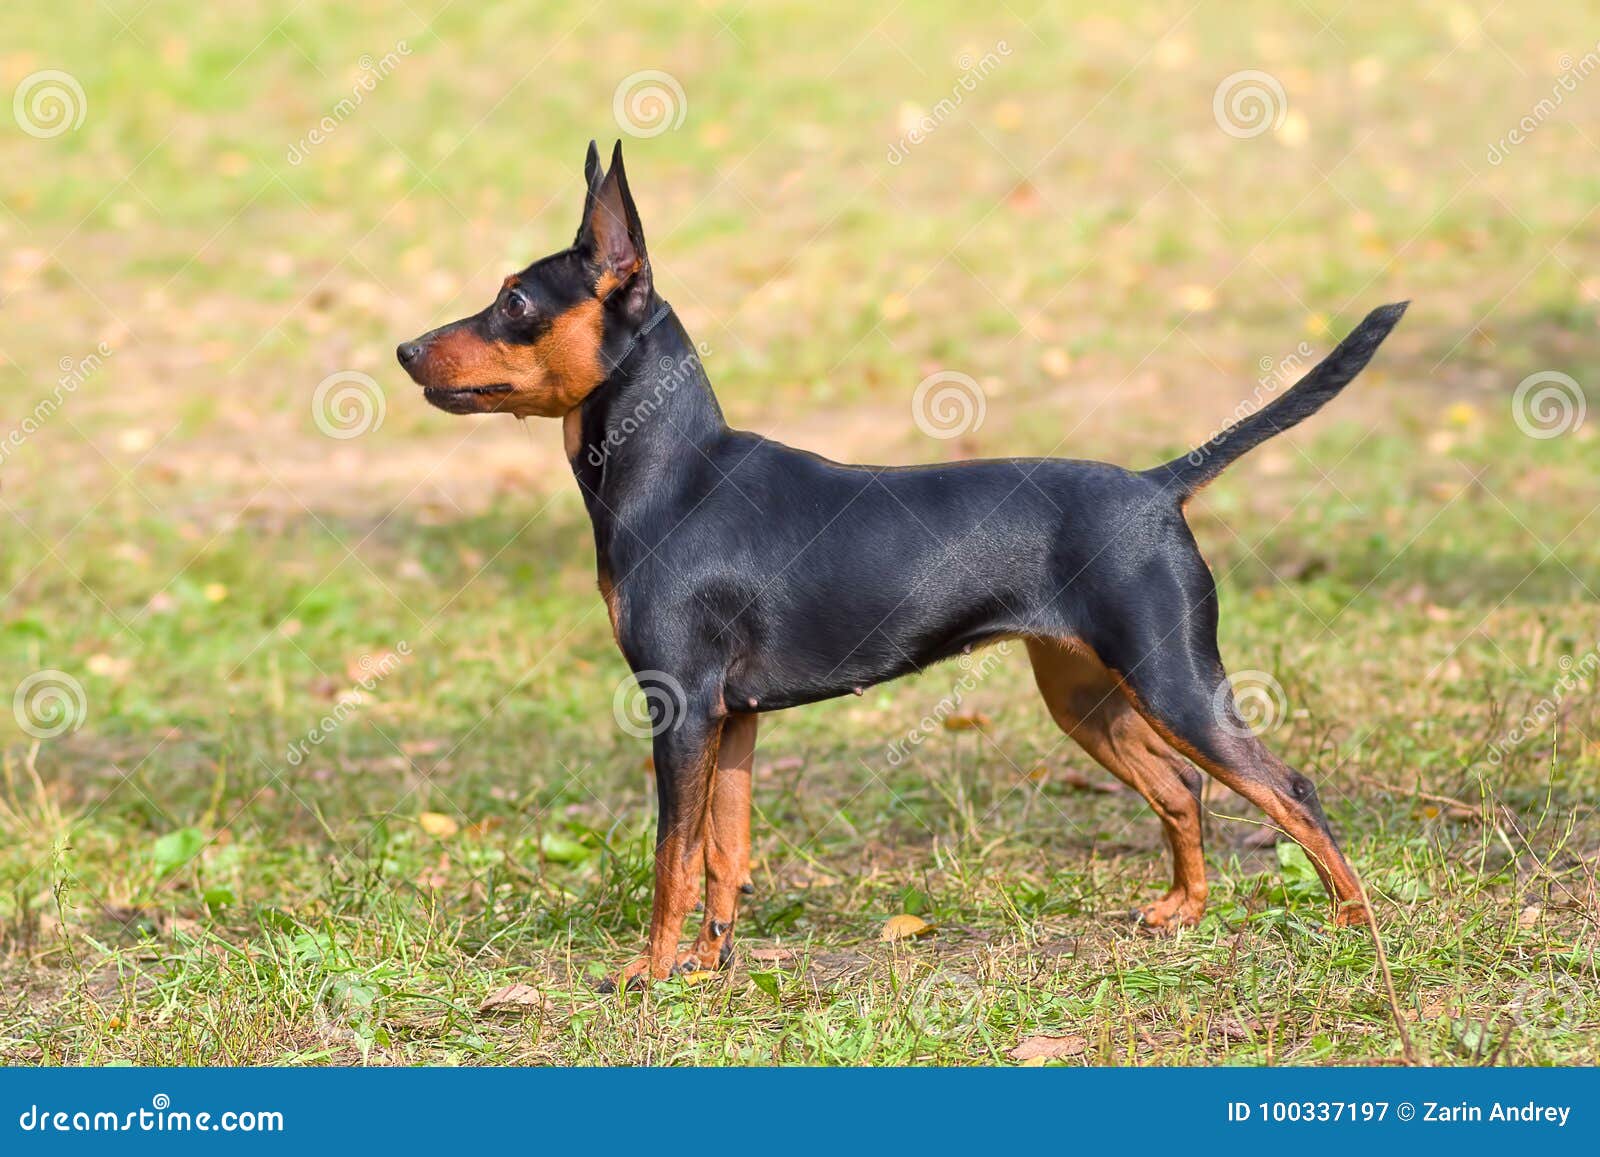 Doberman Pinscher Dog Close-up Stock Image - Image of ...